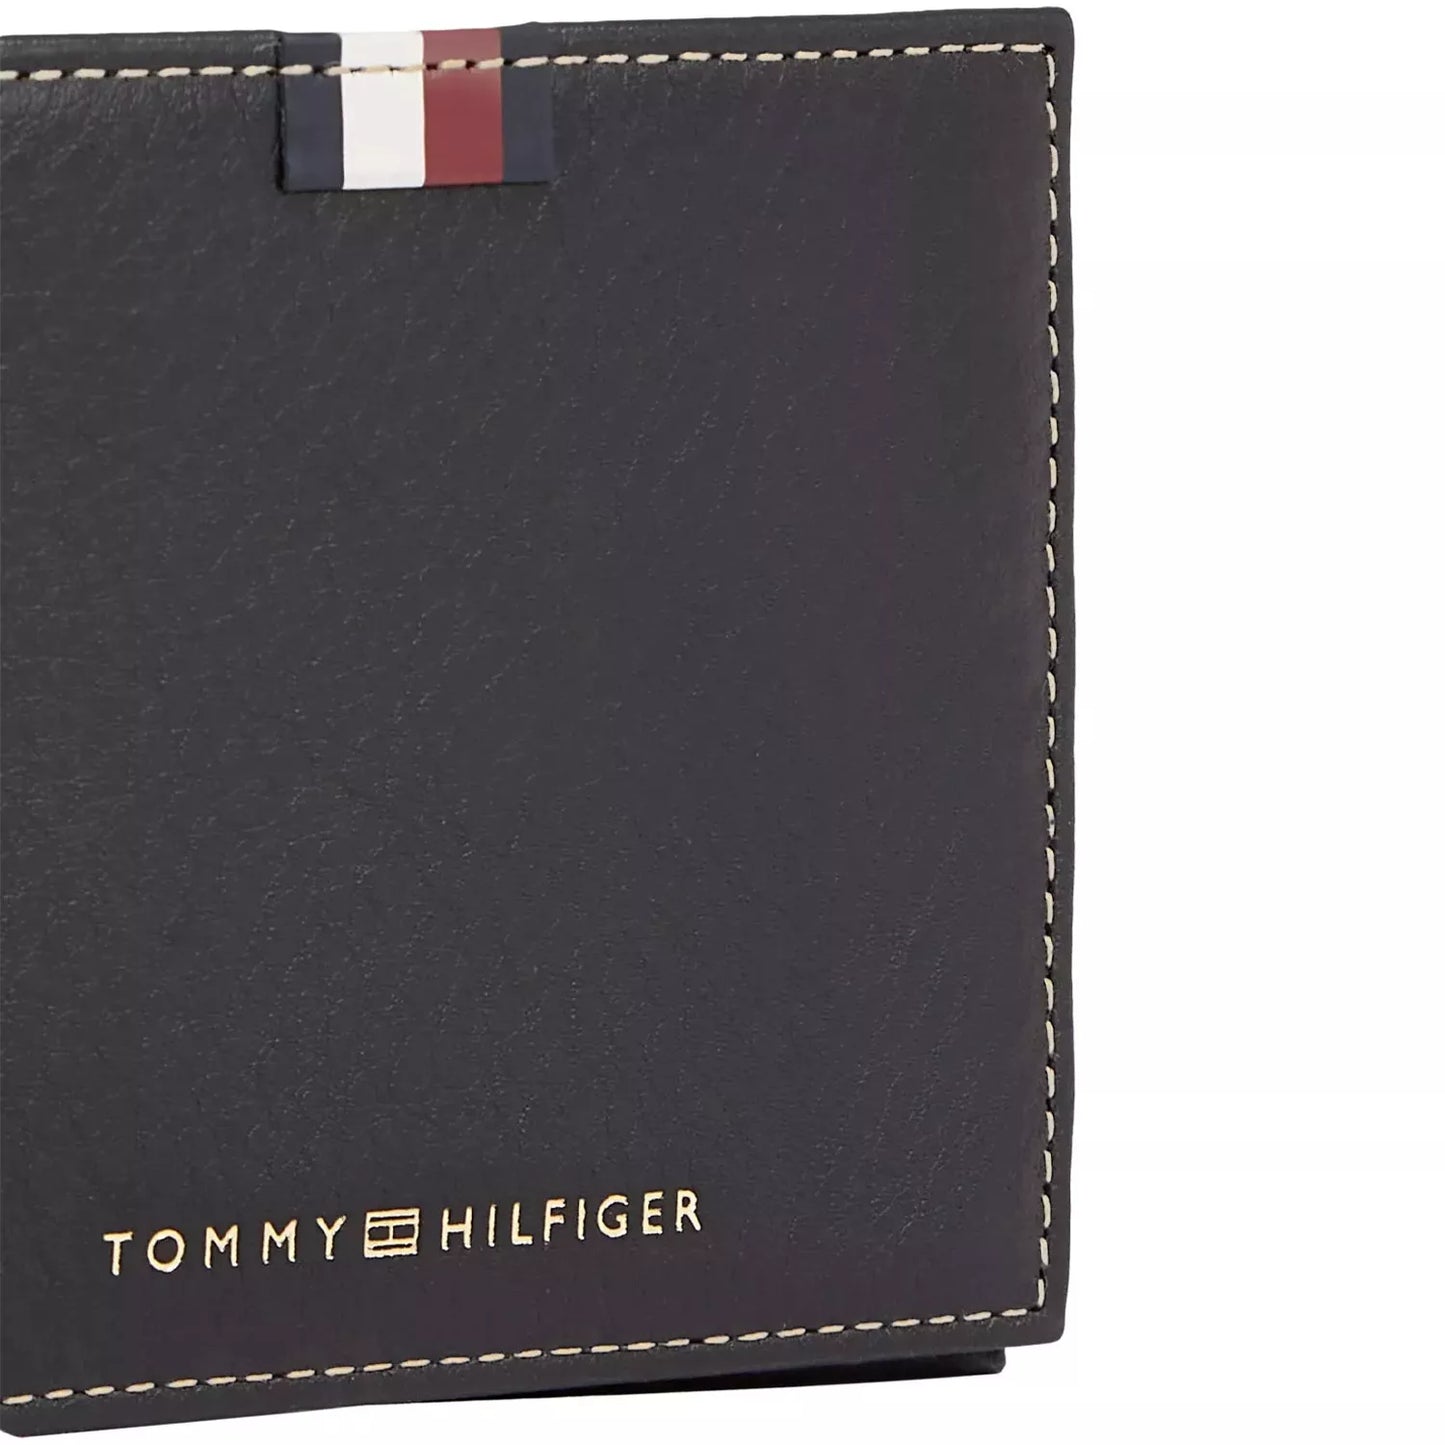 Tommy Hilfiger wallet for men 